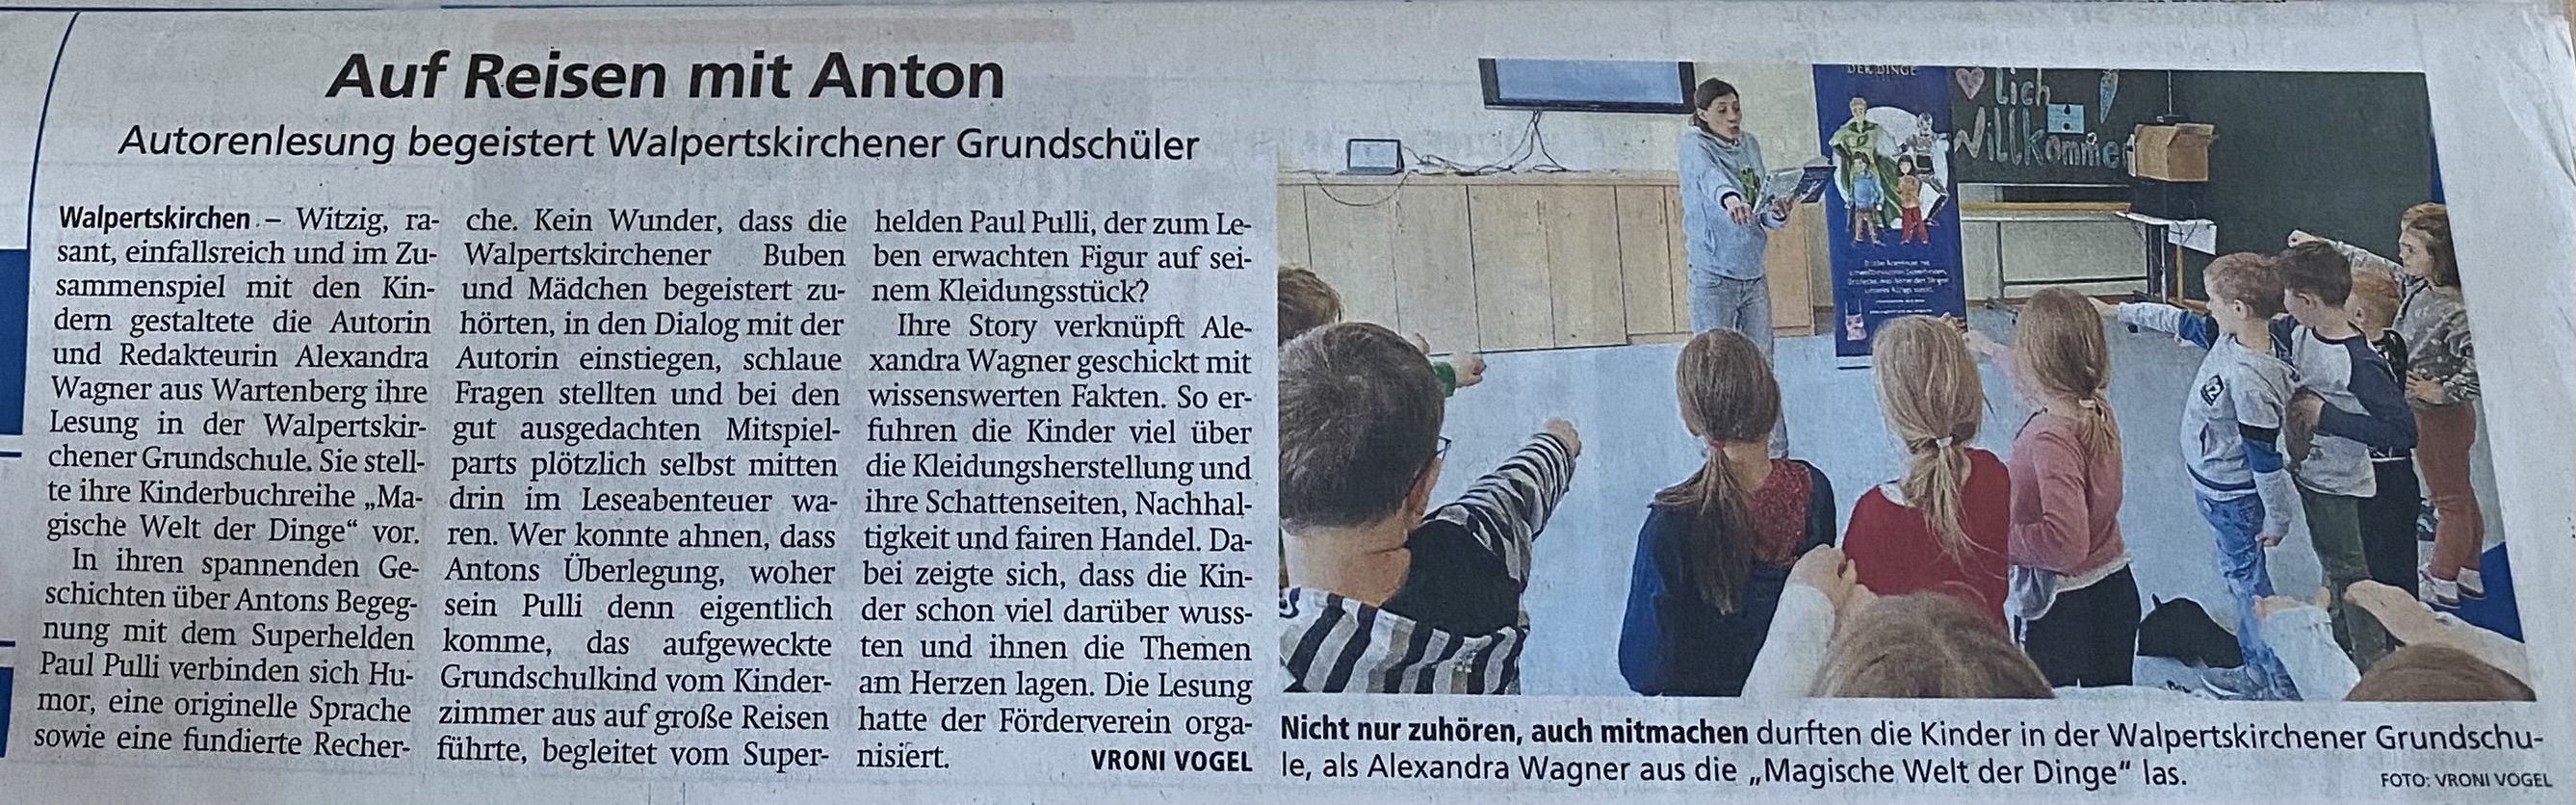 Zeitungsbericht München Merkur über Autorenlesung an der Grundschule Walpertskirchen